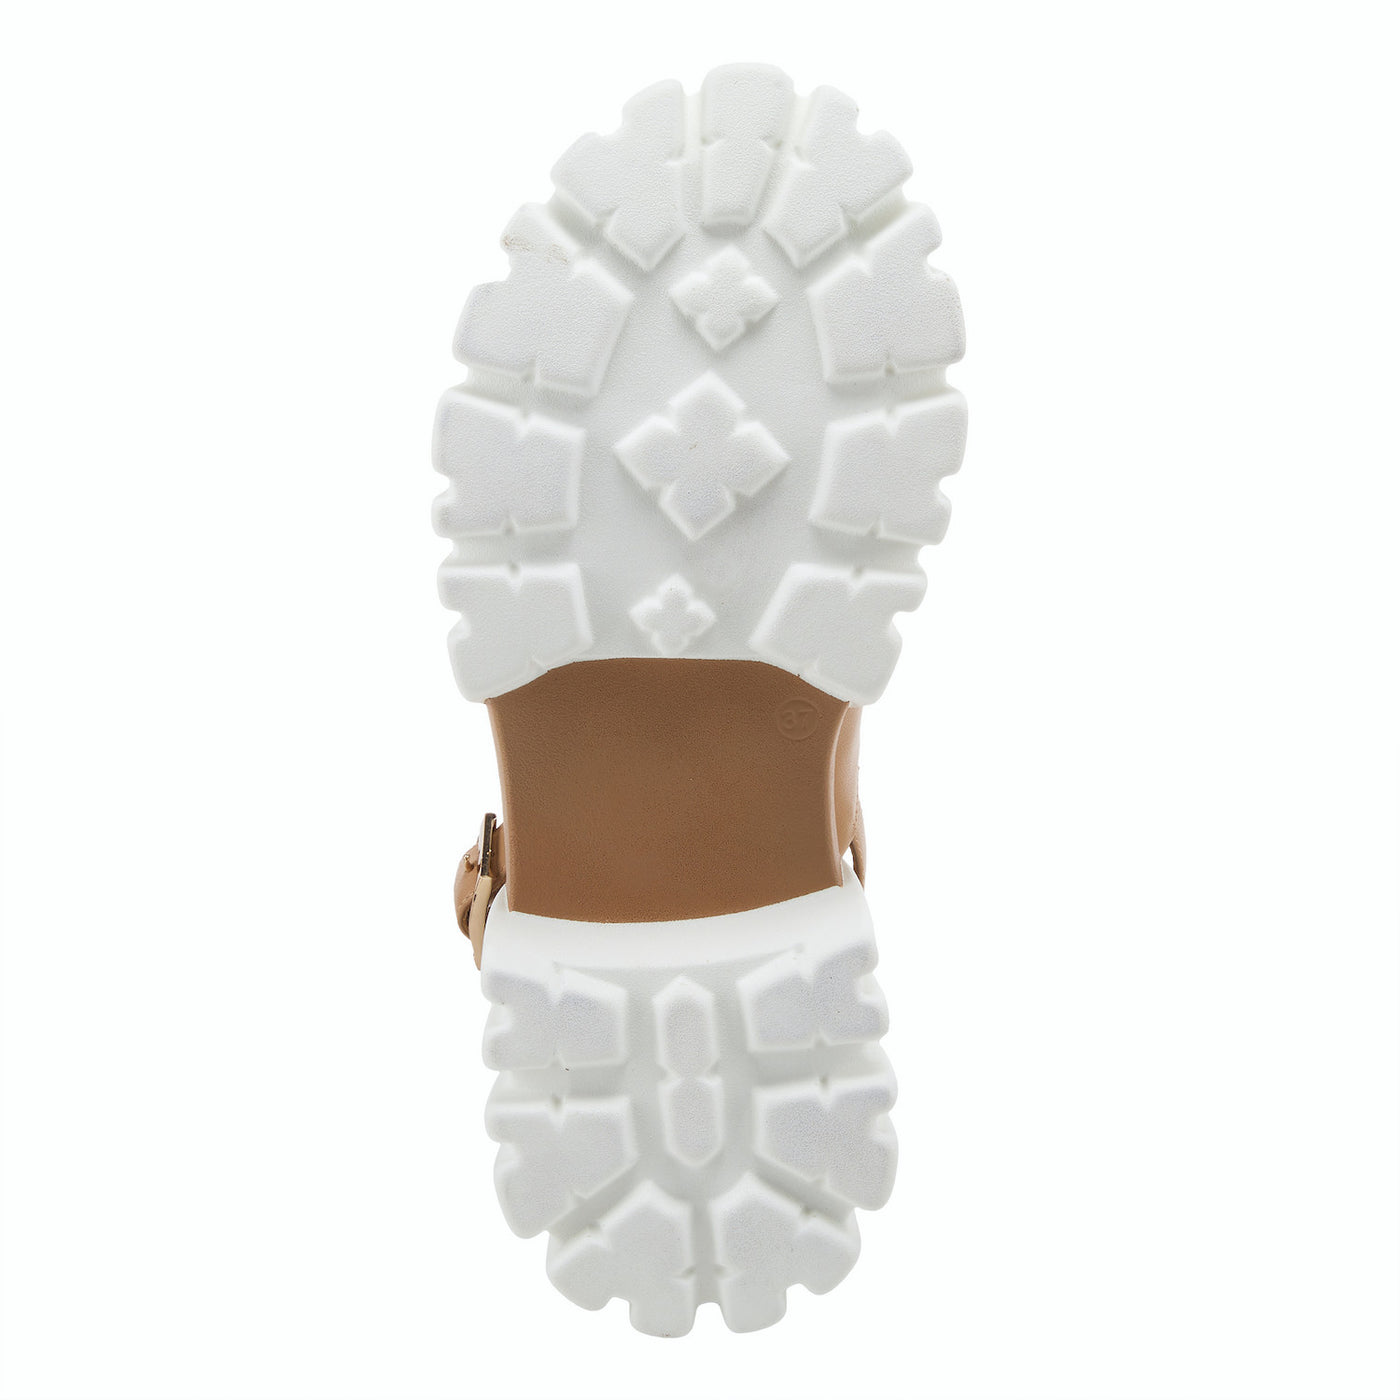 Azura BLONDIE Slide Sandal in Tan